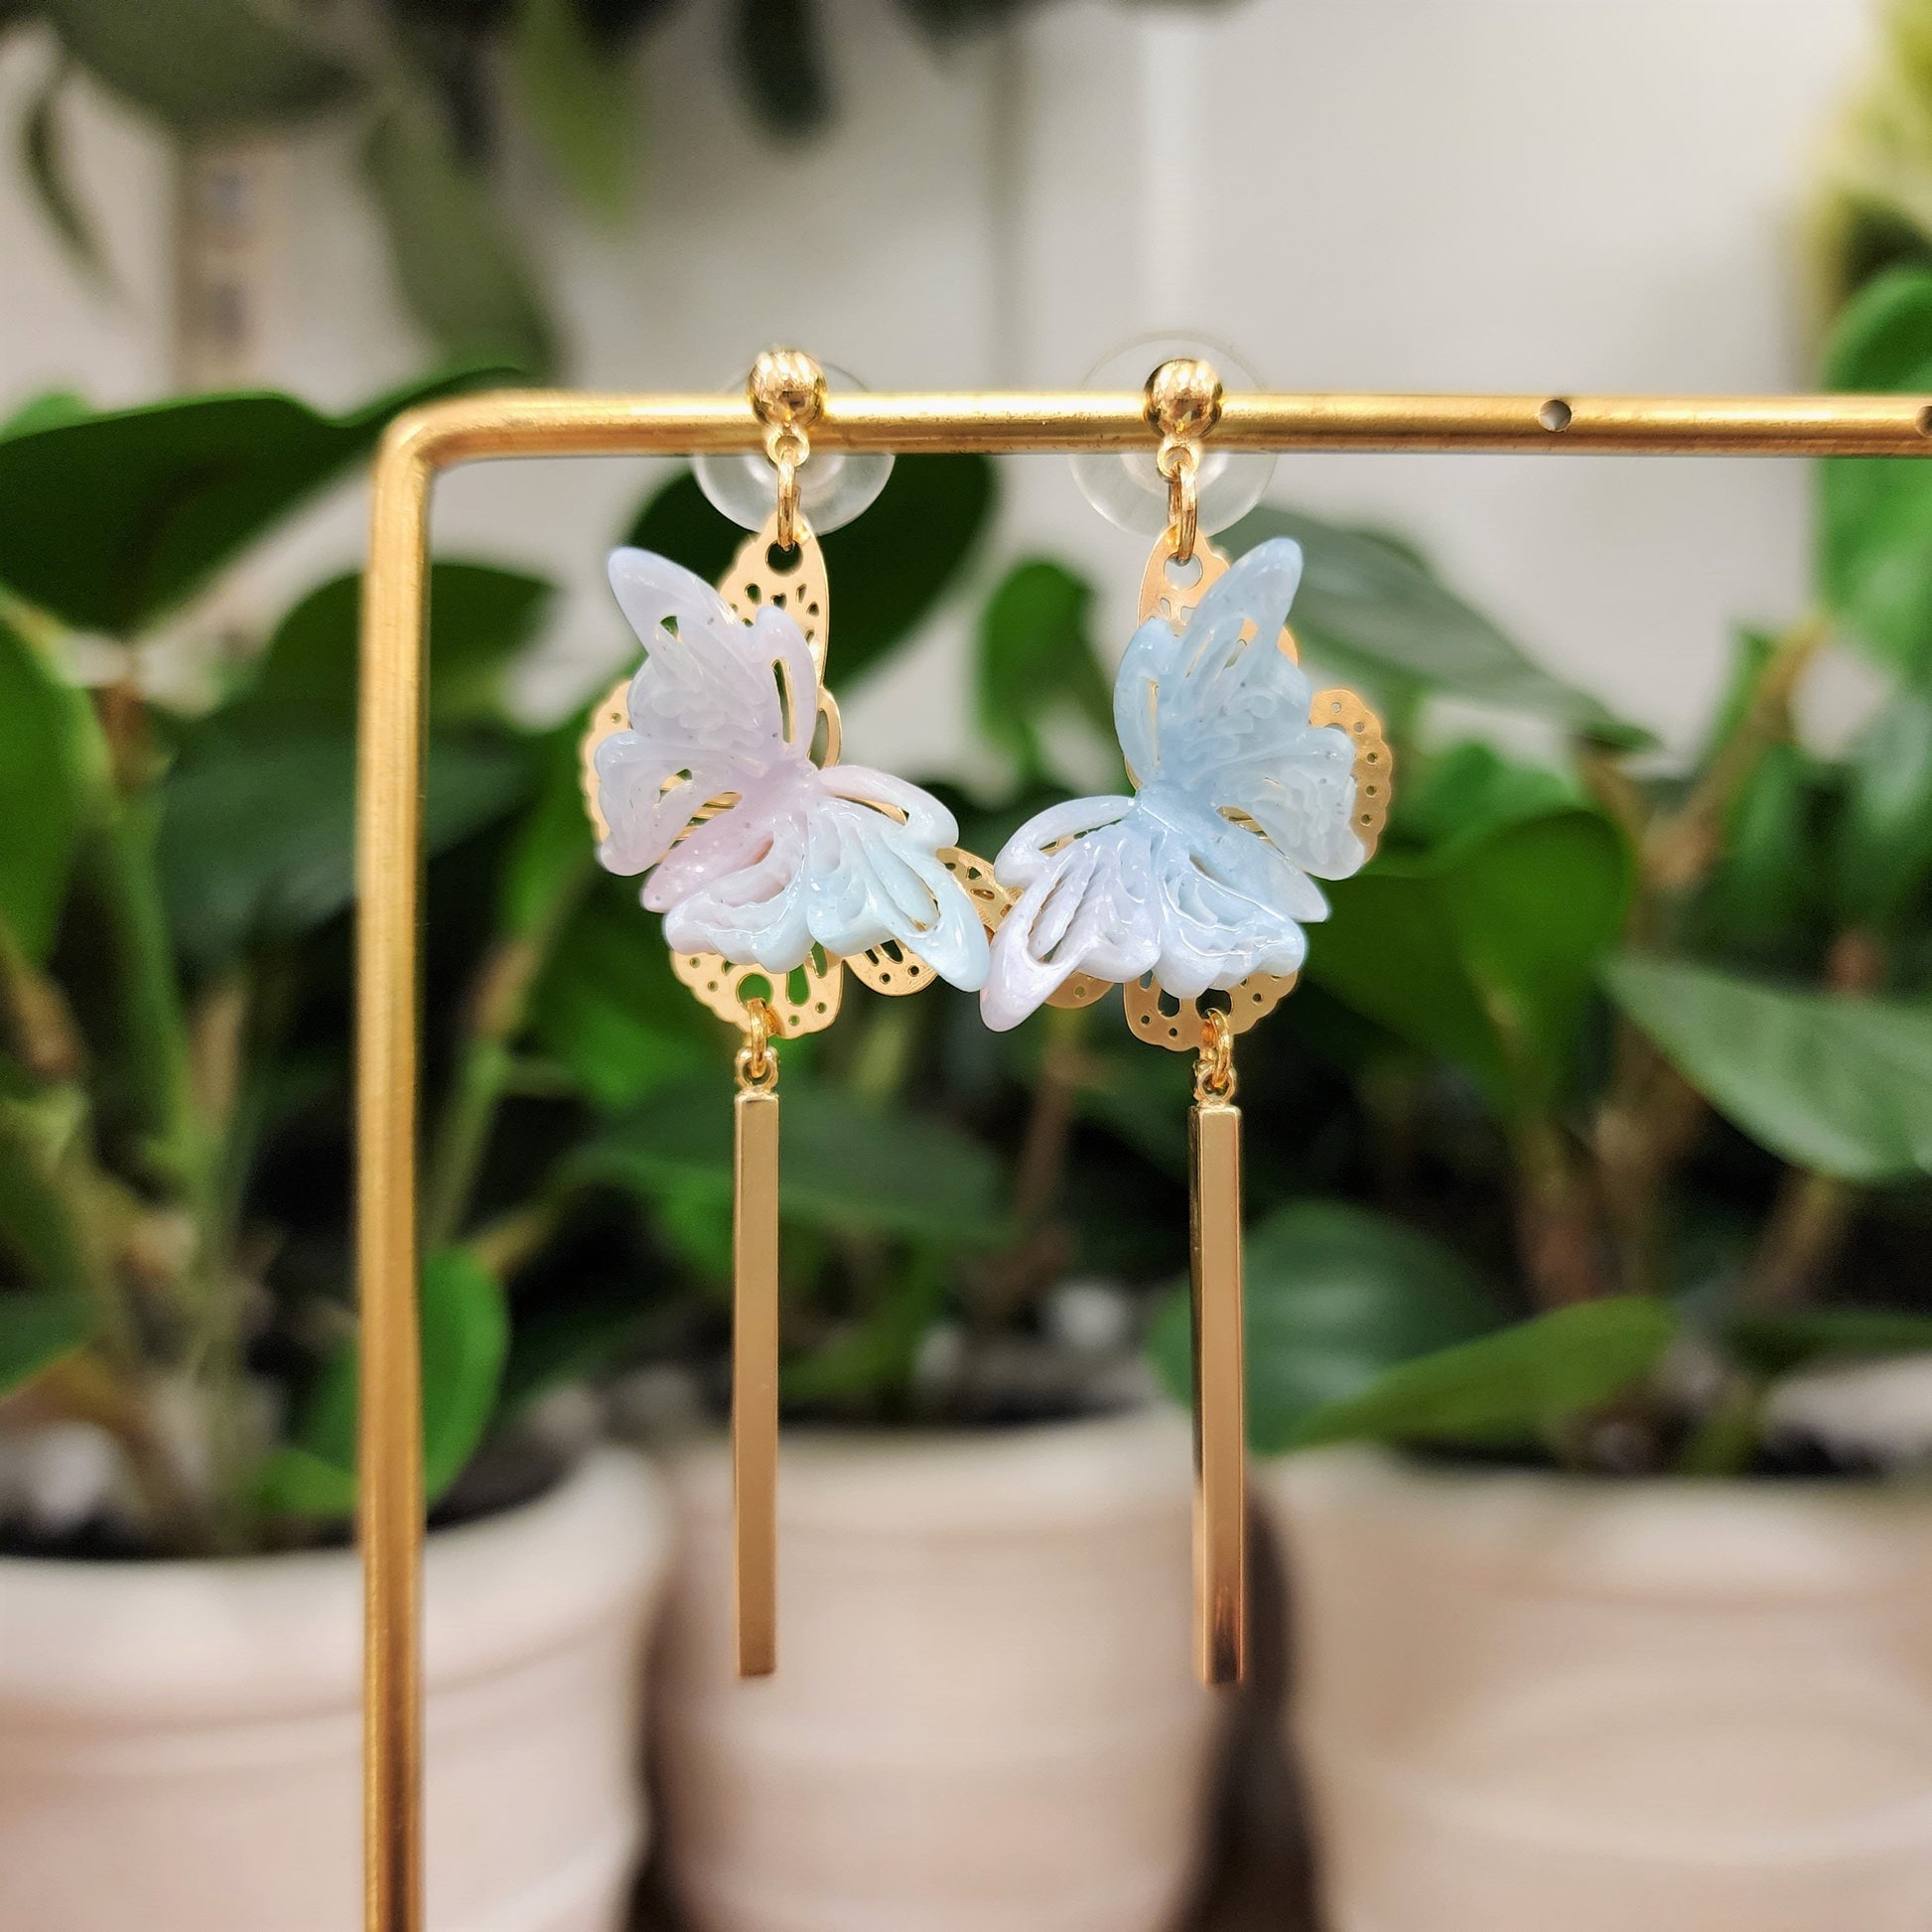 Butterfly earrings, butterfly dangle earrings, Oriental earrings, gift for her